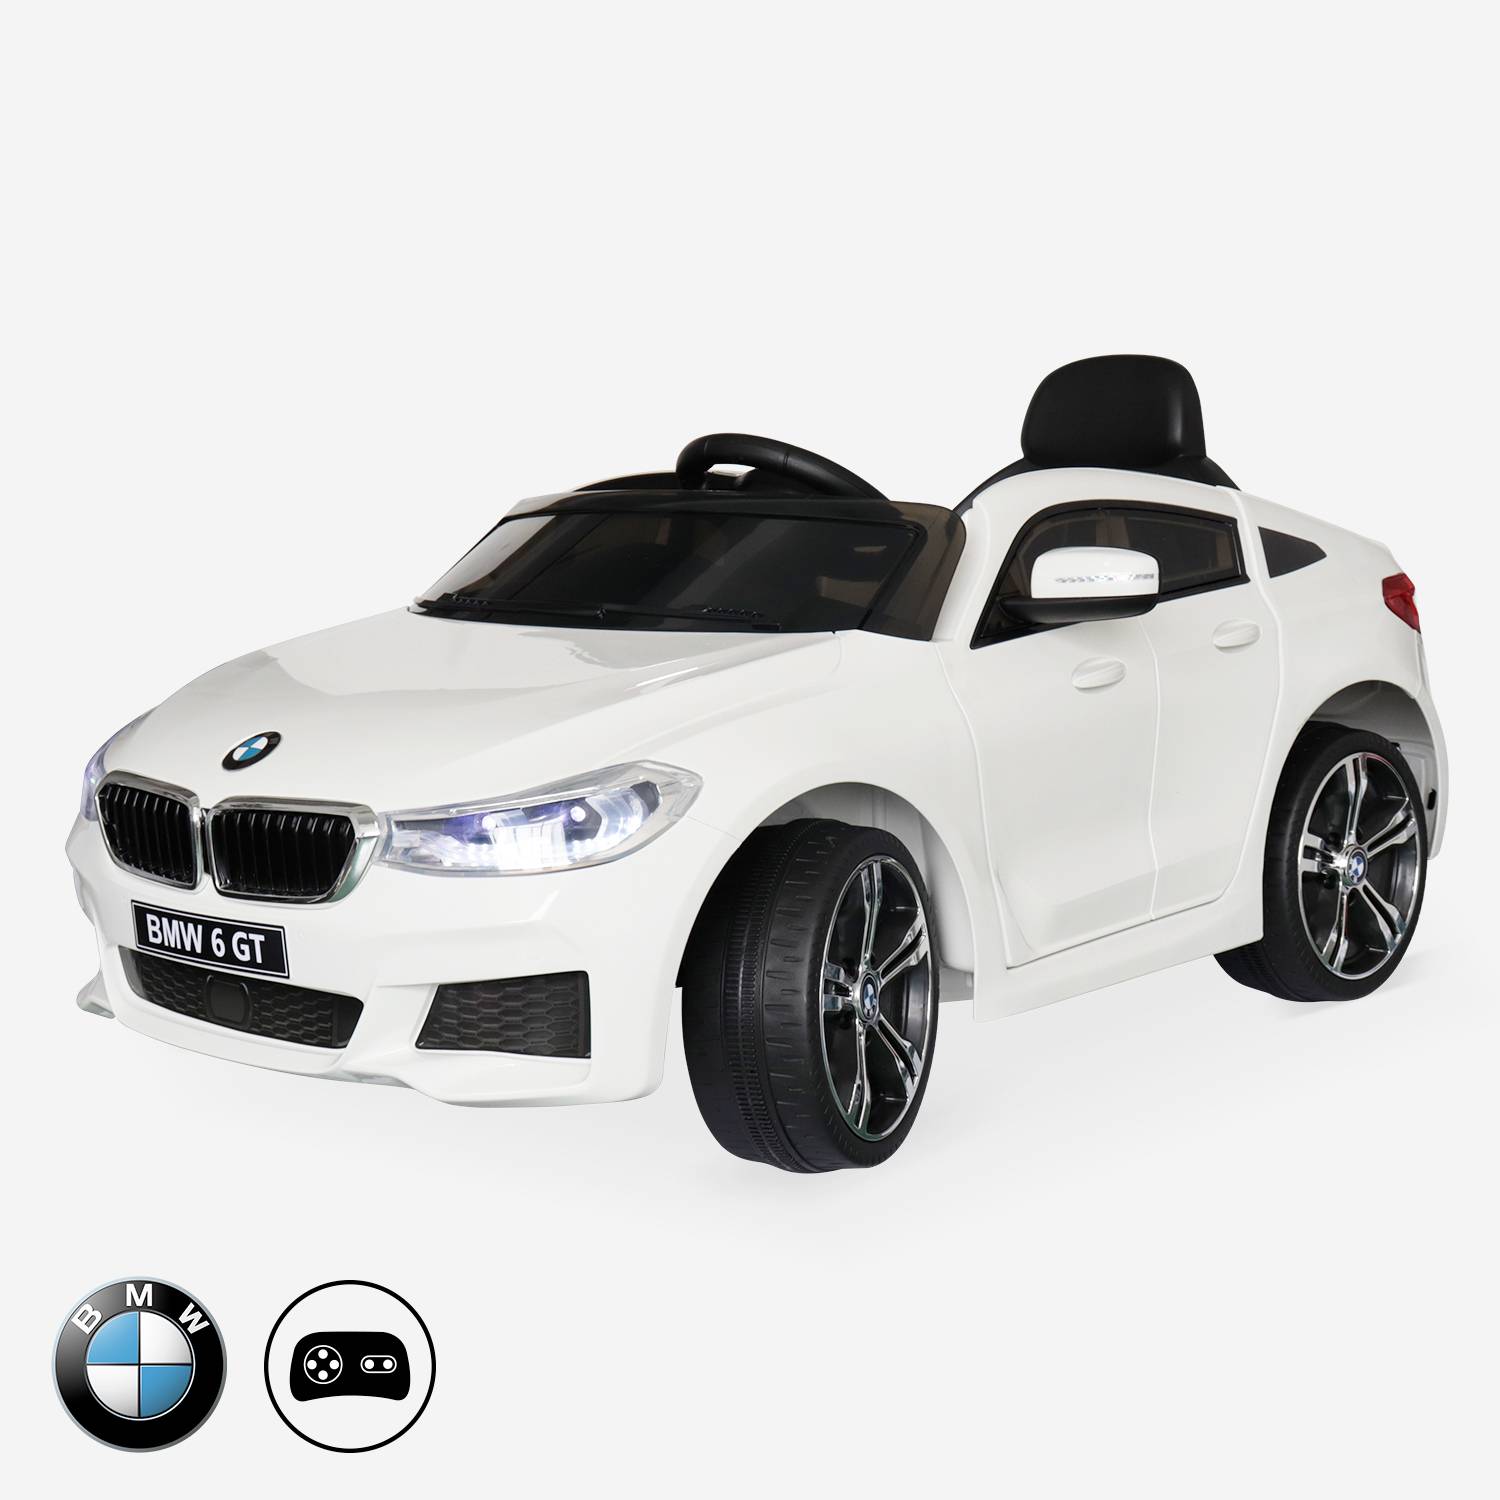 BMW Serie 6 GT Gran Turismo bianca, auto elettrica per bambini 12V 4 Ah, 1 posto, con radio e telecomando,sweeek,Photo1